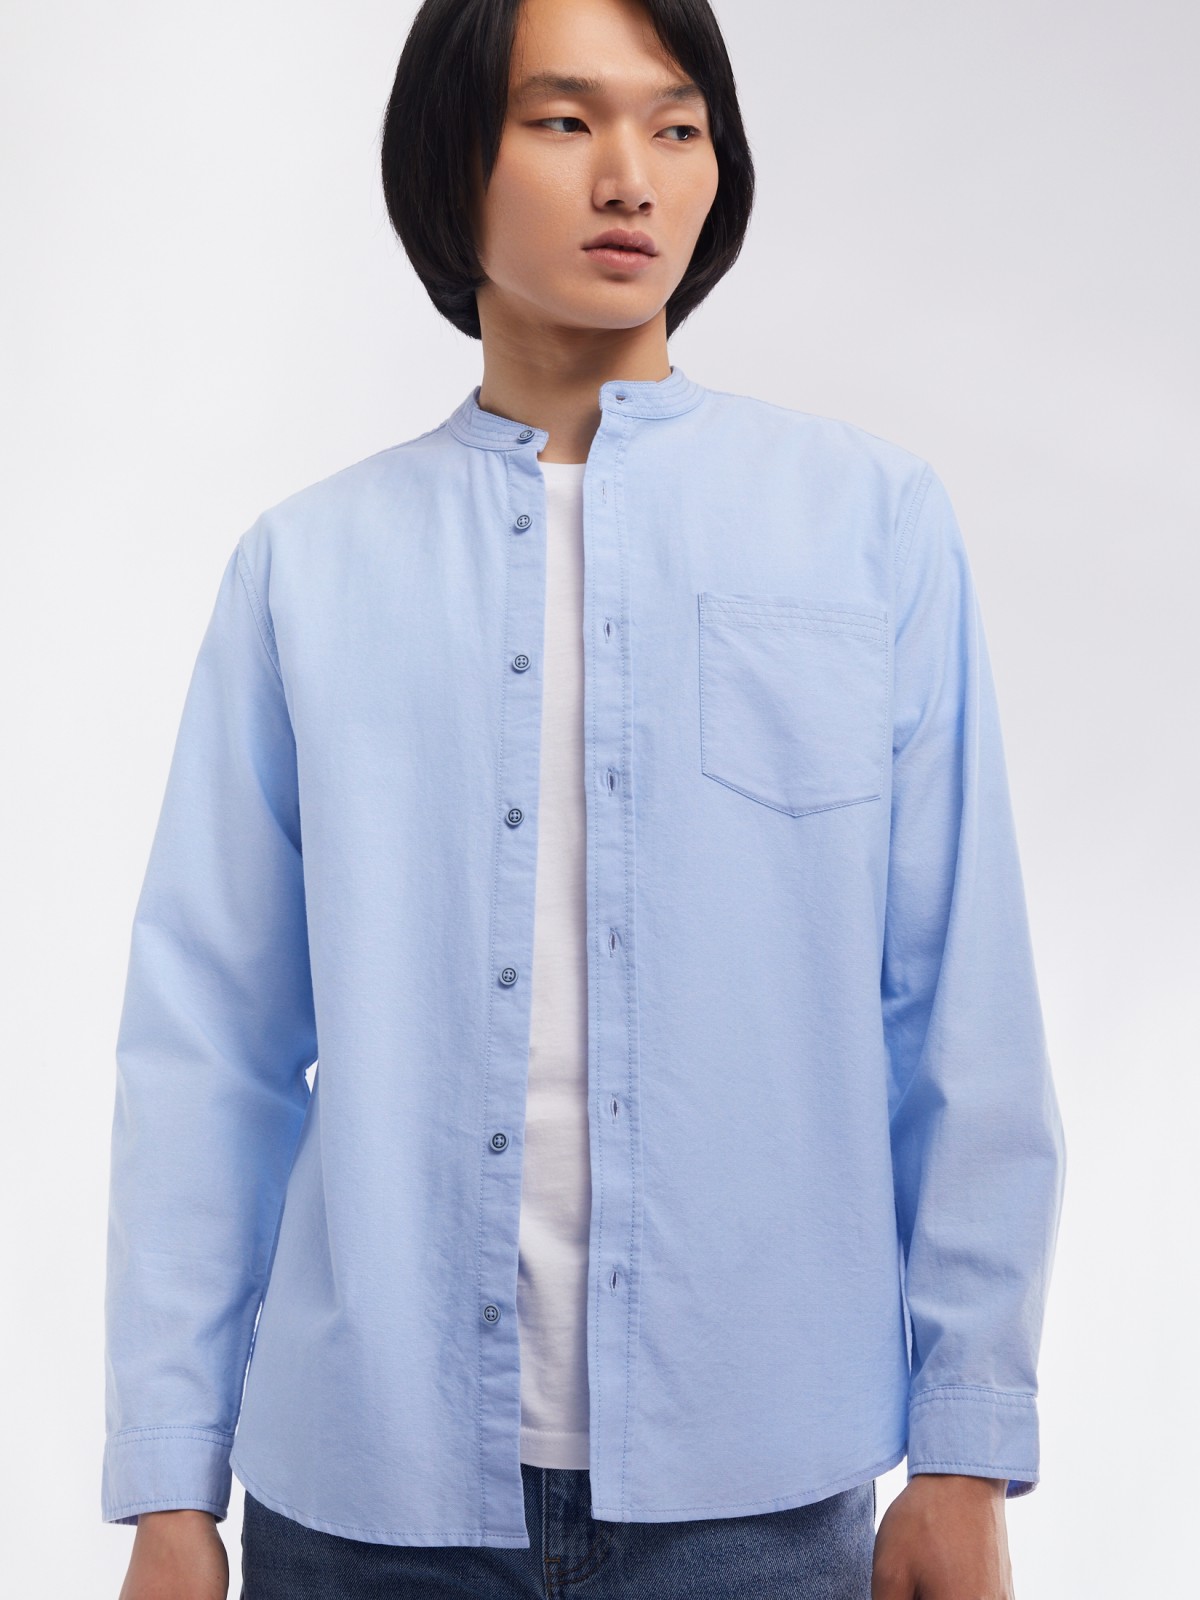 Офисная рубашка из хлопка с воротником-стойкой и длинным рукавом zolla 014122159033, цвет светло-голубой, размер S - фото 3